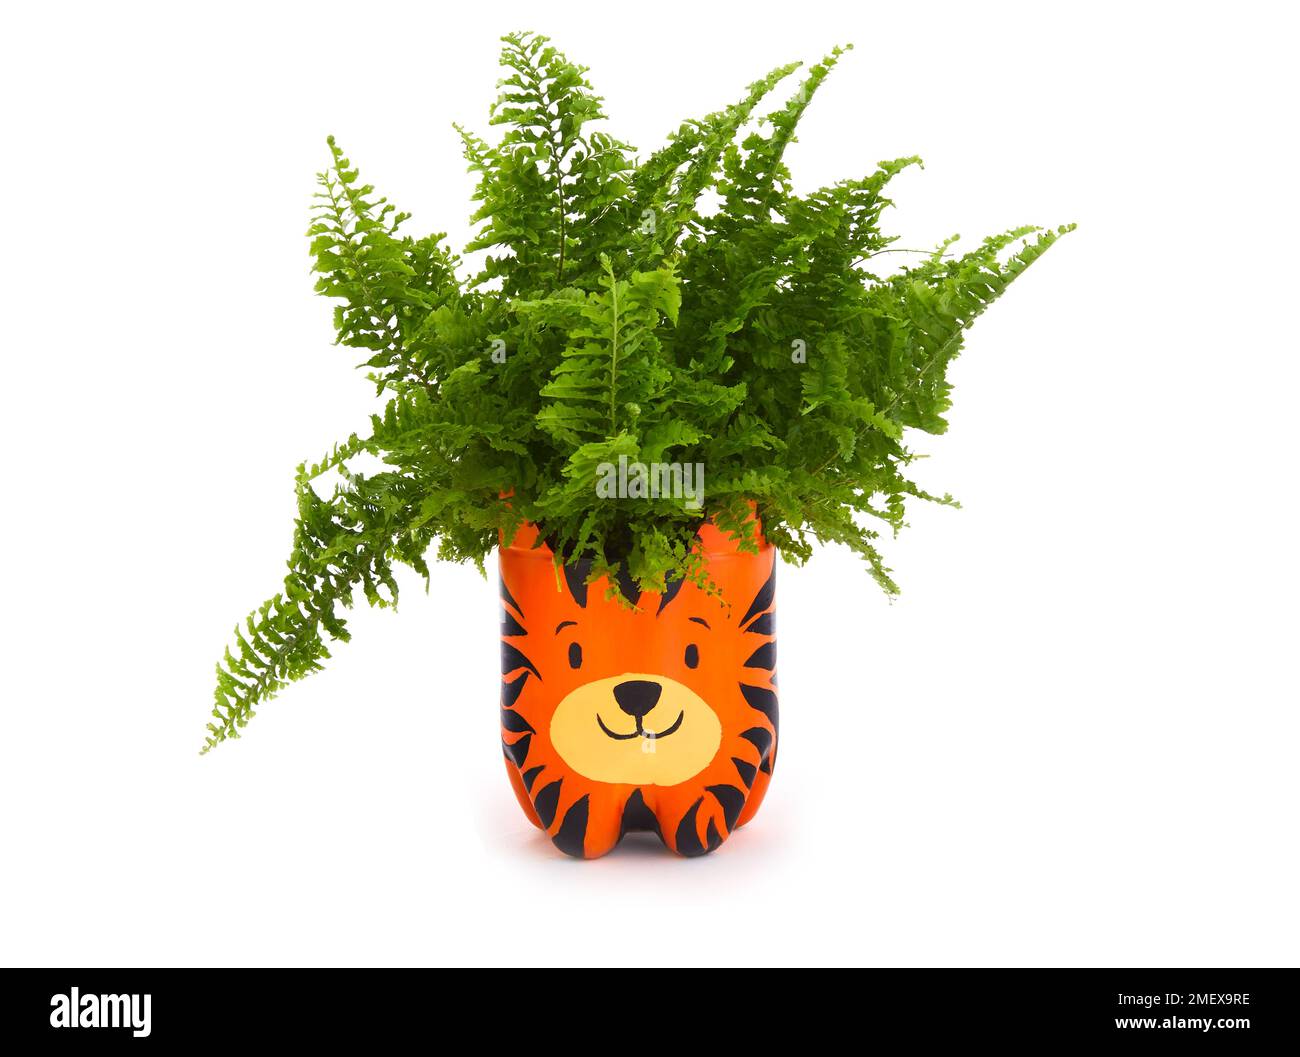 Jardinières de bouteille - pots finis avec plantes - pot de tigre avec fougère Banque D'Images